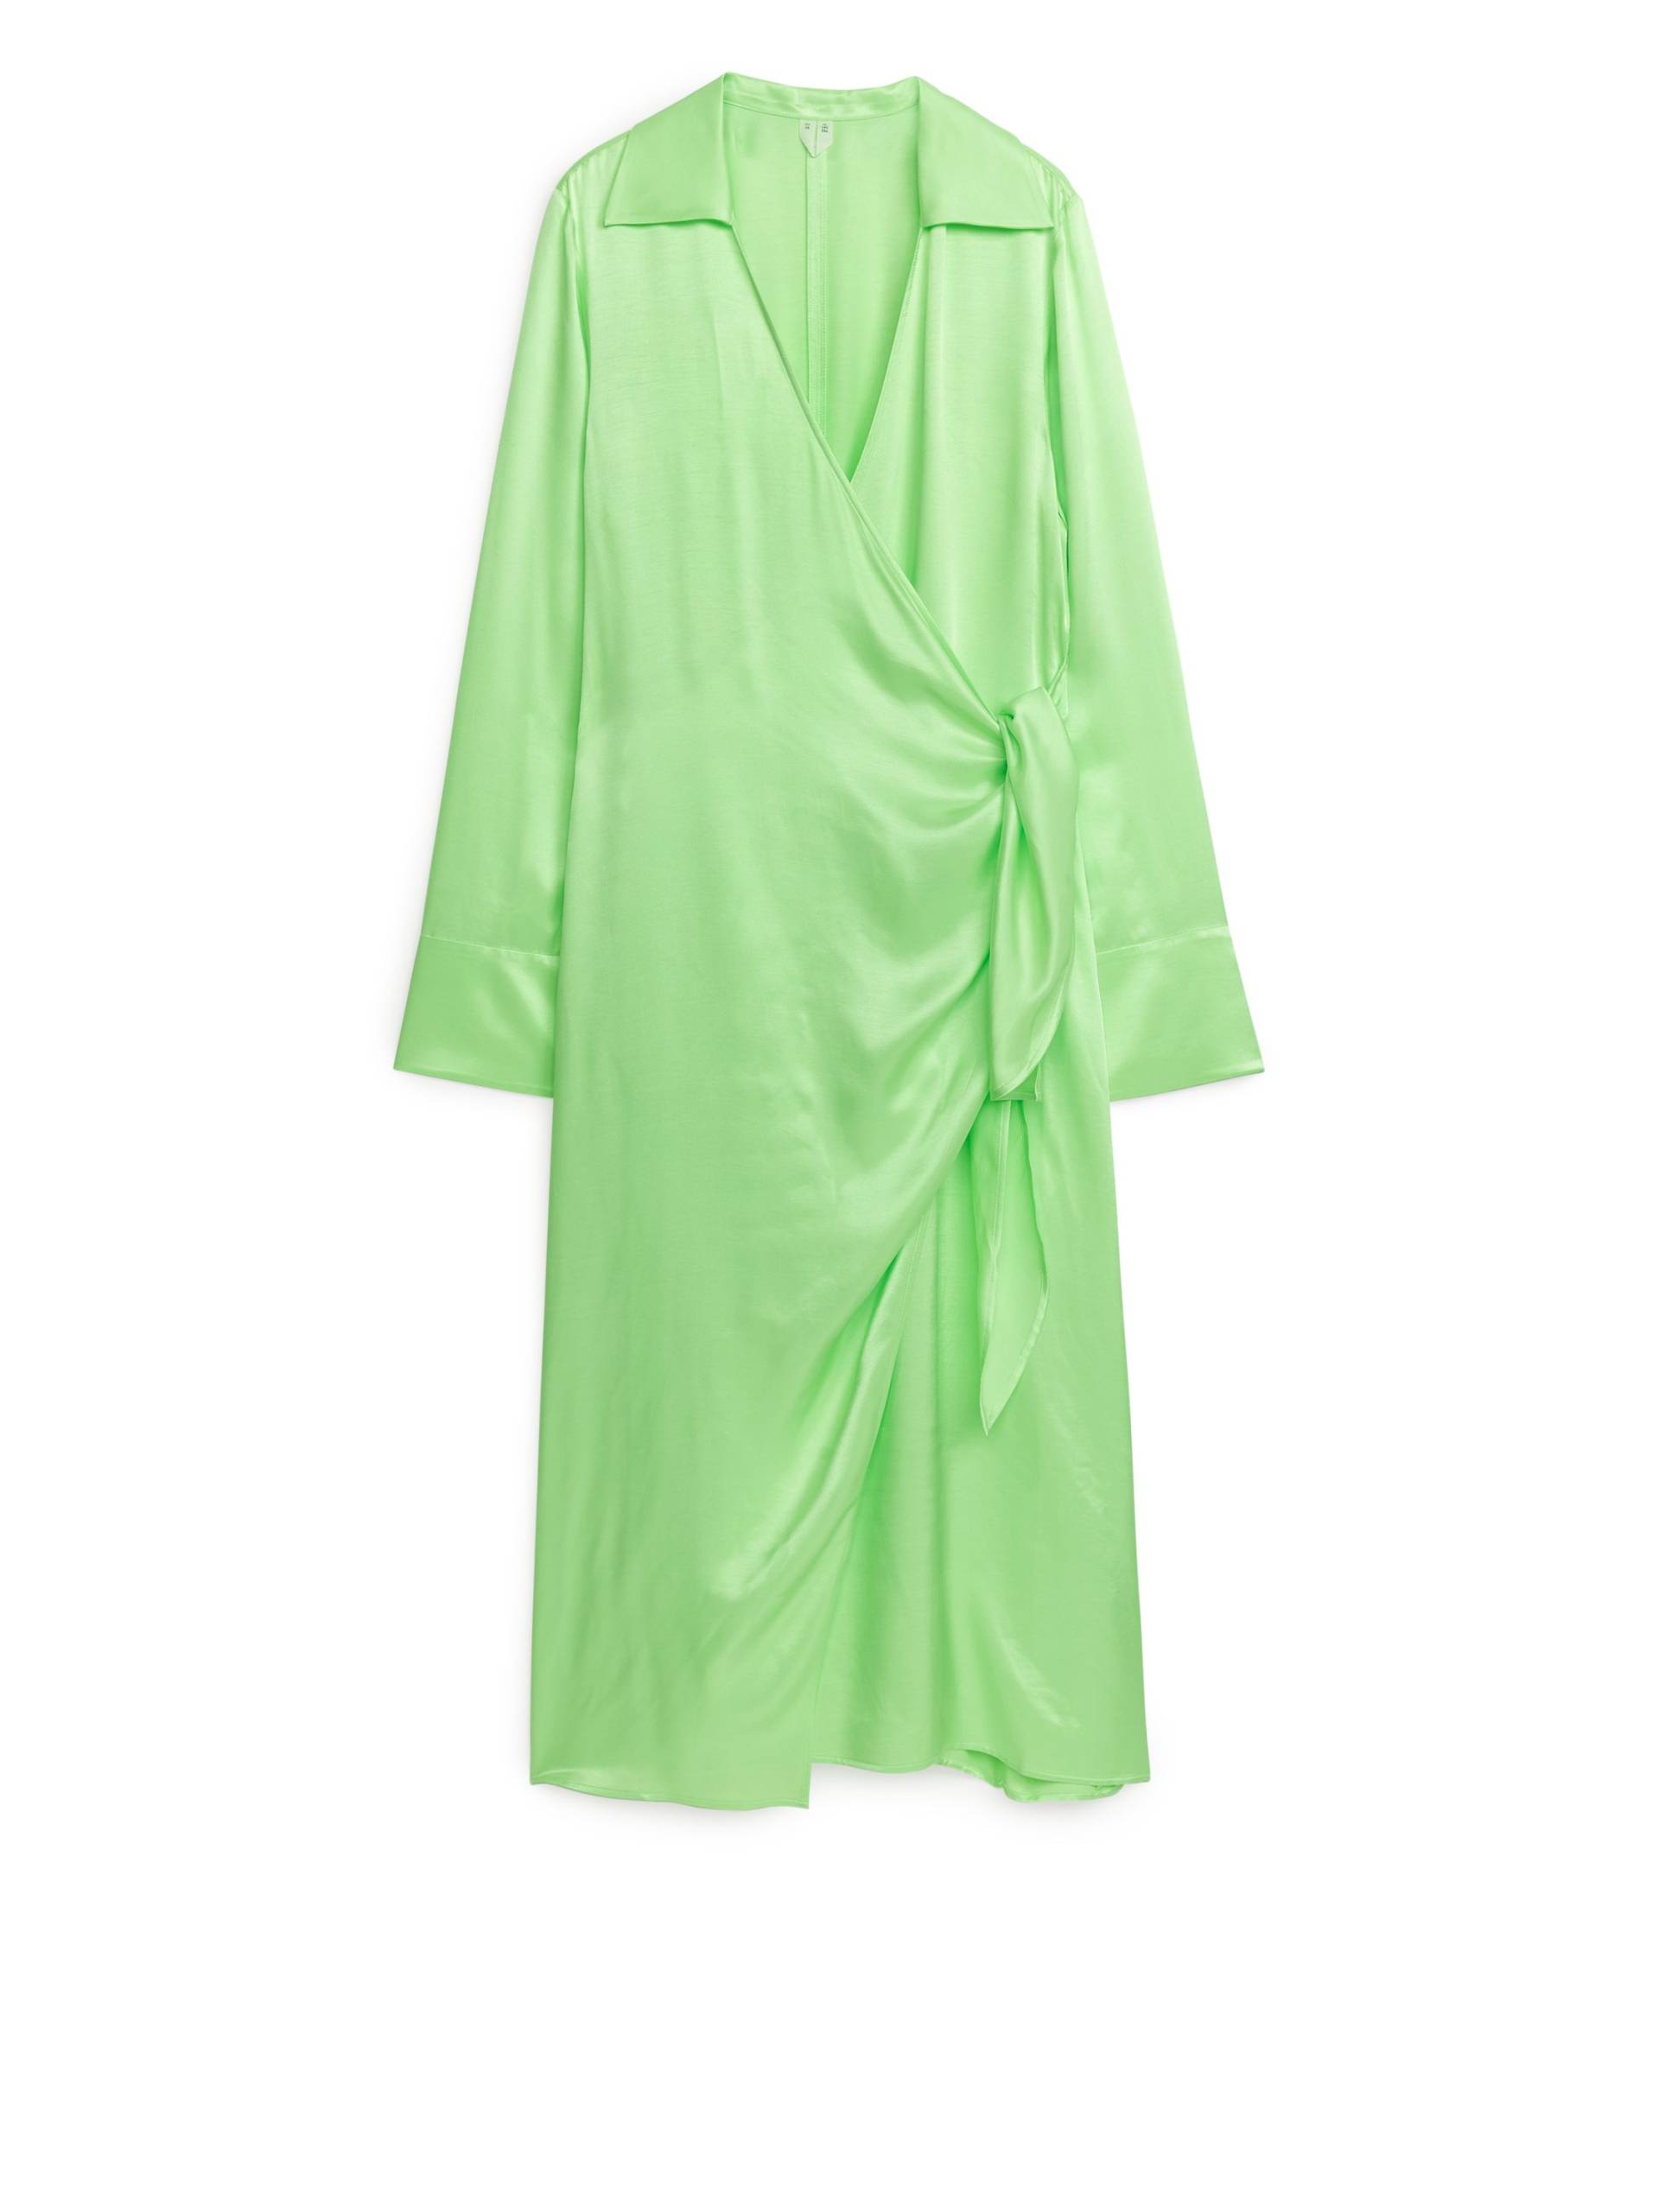 Arket Wickelkleid Hellgrün, Party kleider in Größe 40. Farbe: Light green von Arket